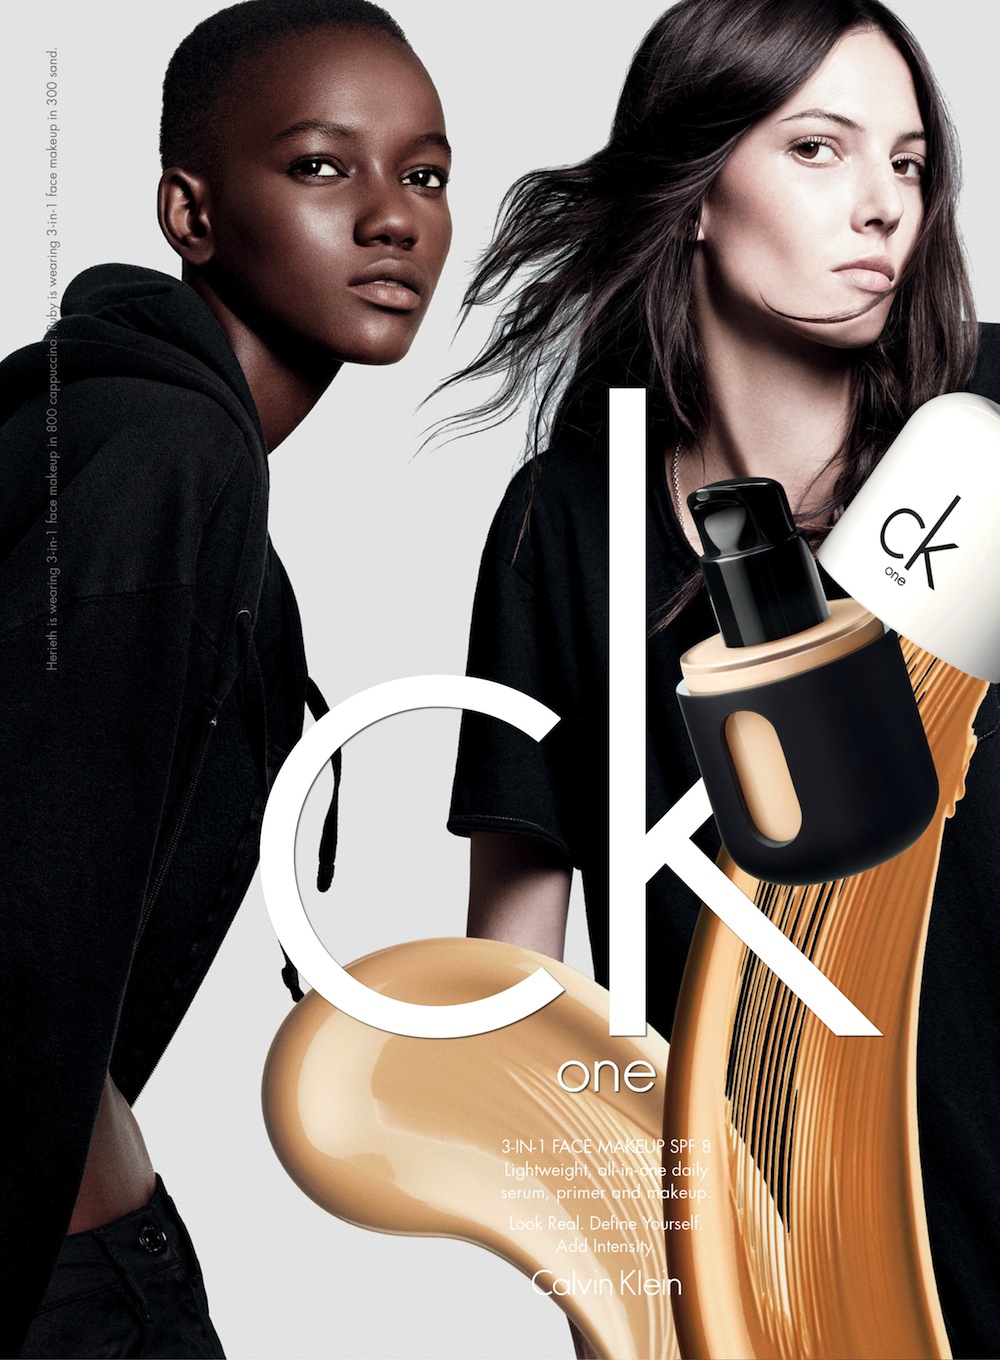 CK one Color Cosmetics, el maquillaje según Calvin Klein | Belleza en vena